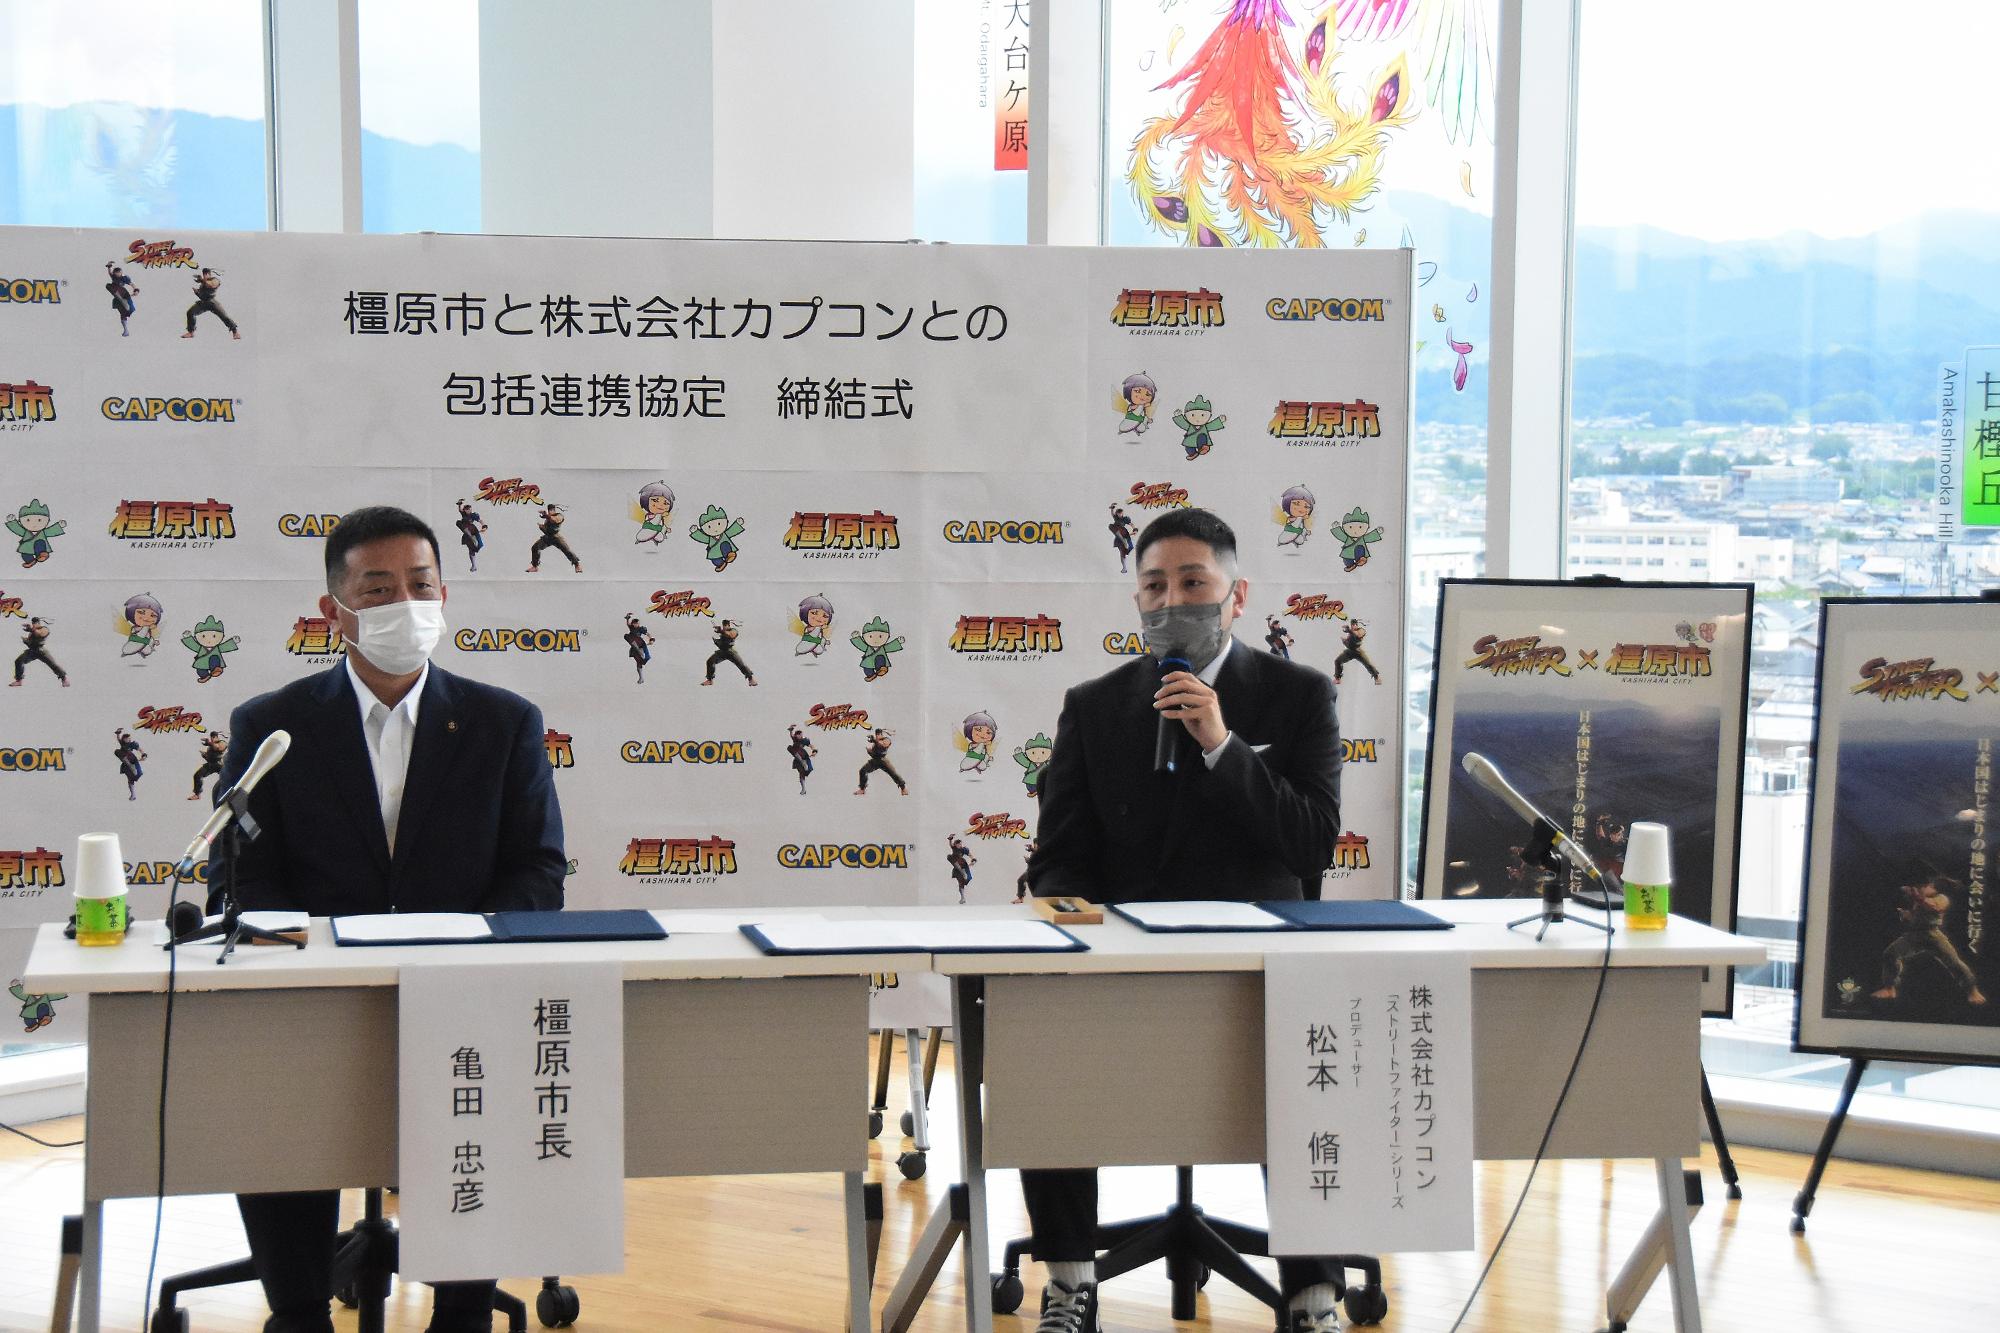 亀田市長の横で、締結式中にマイクを持って話している松本氏の写真